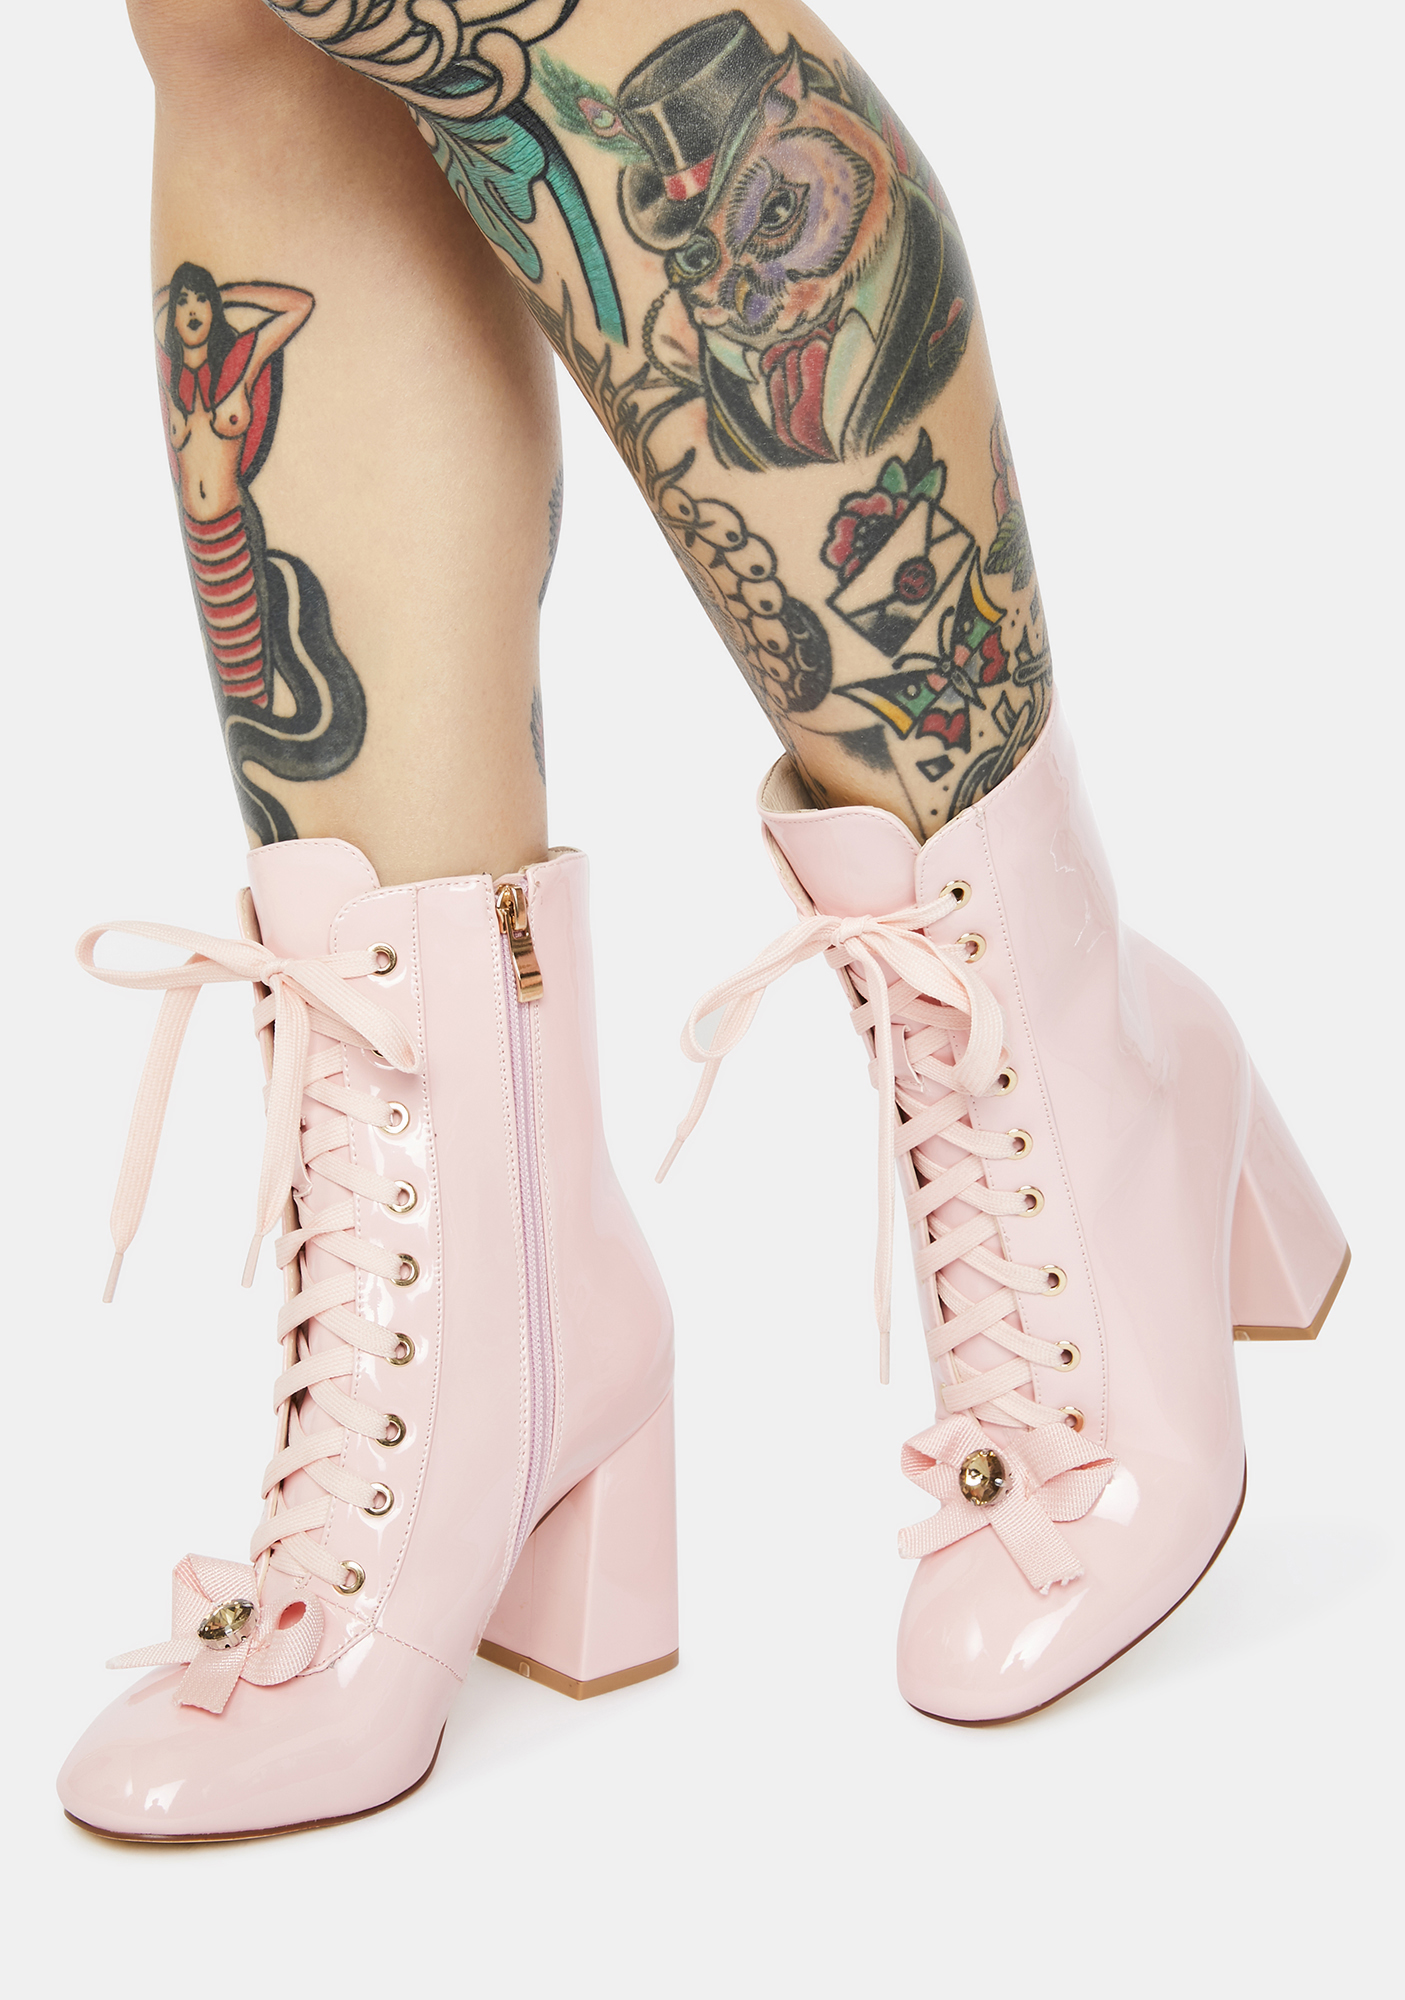 AZALEA WANG The One I Want Lace Up Boots | Dolls Kill